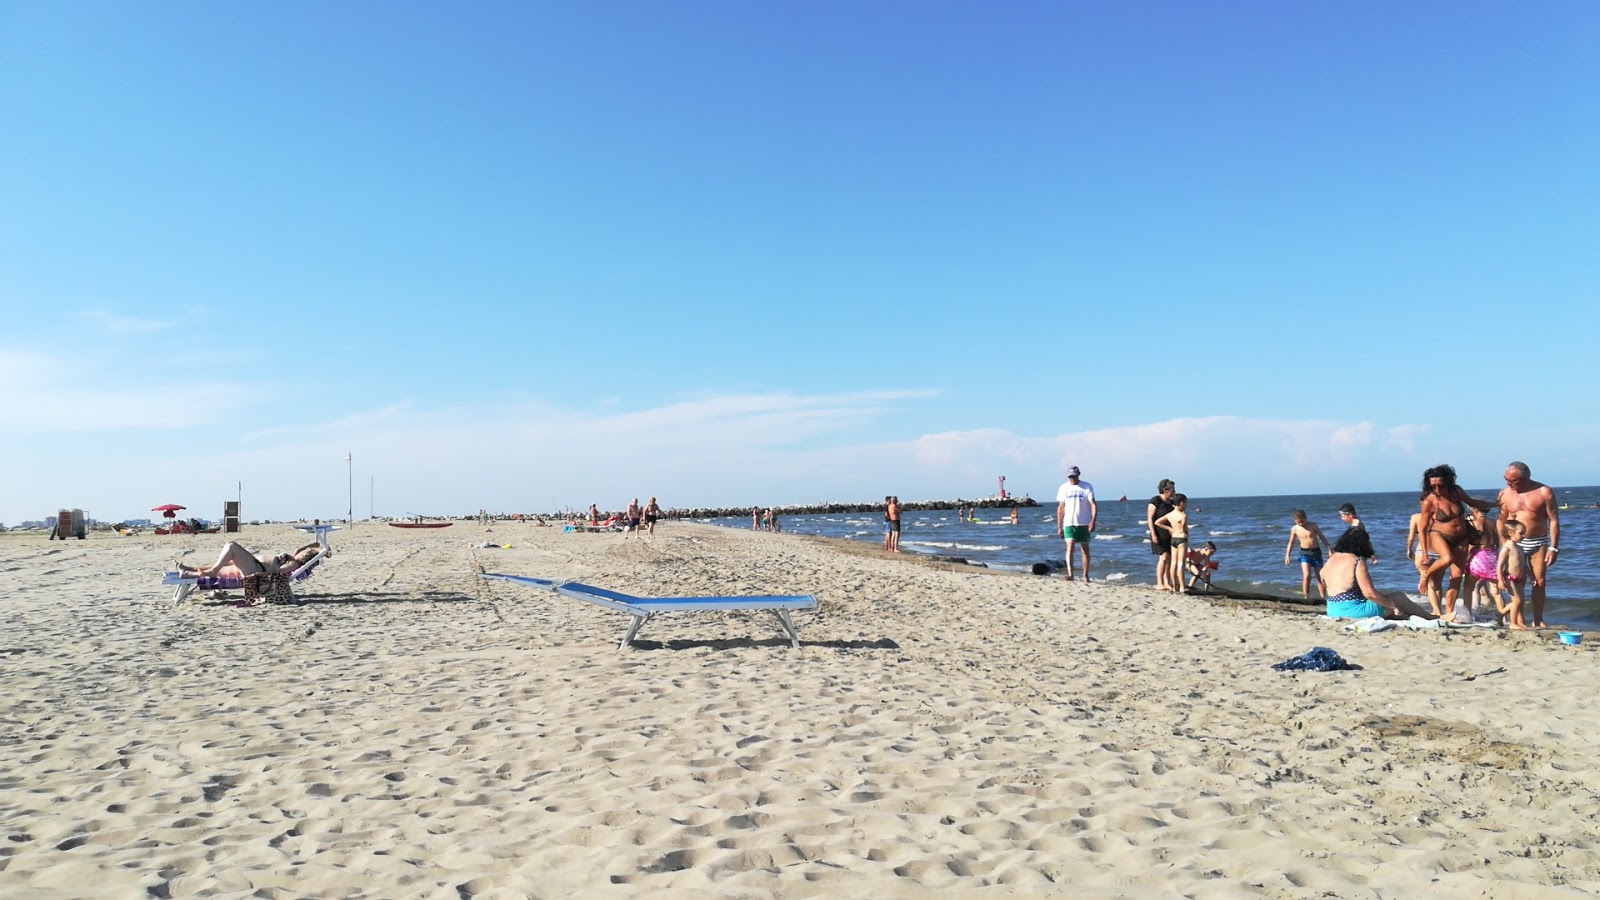 Foto av Spiaggia Lido Degli Estensi med grå sand yta